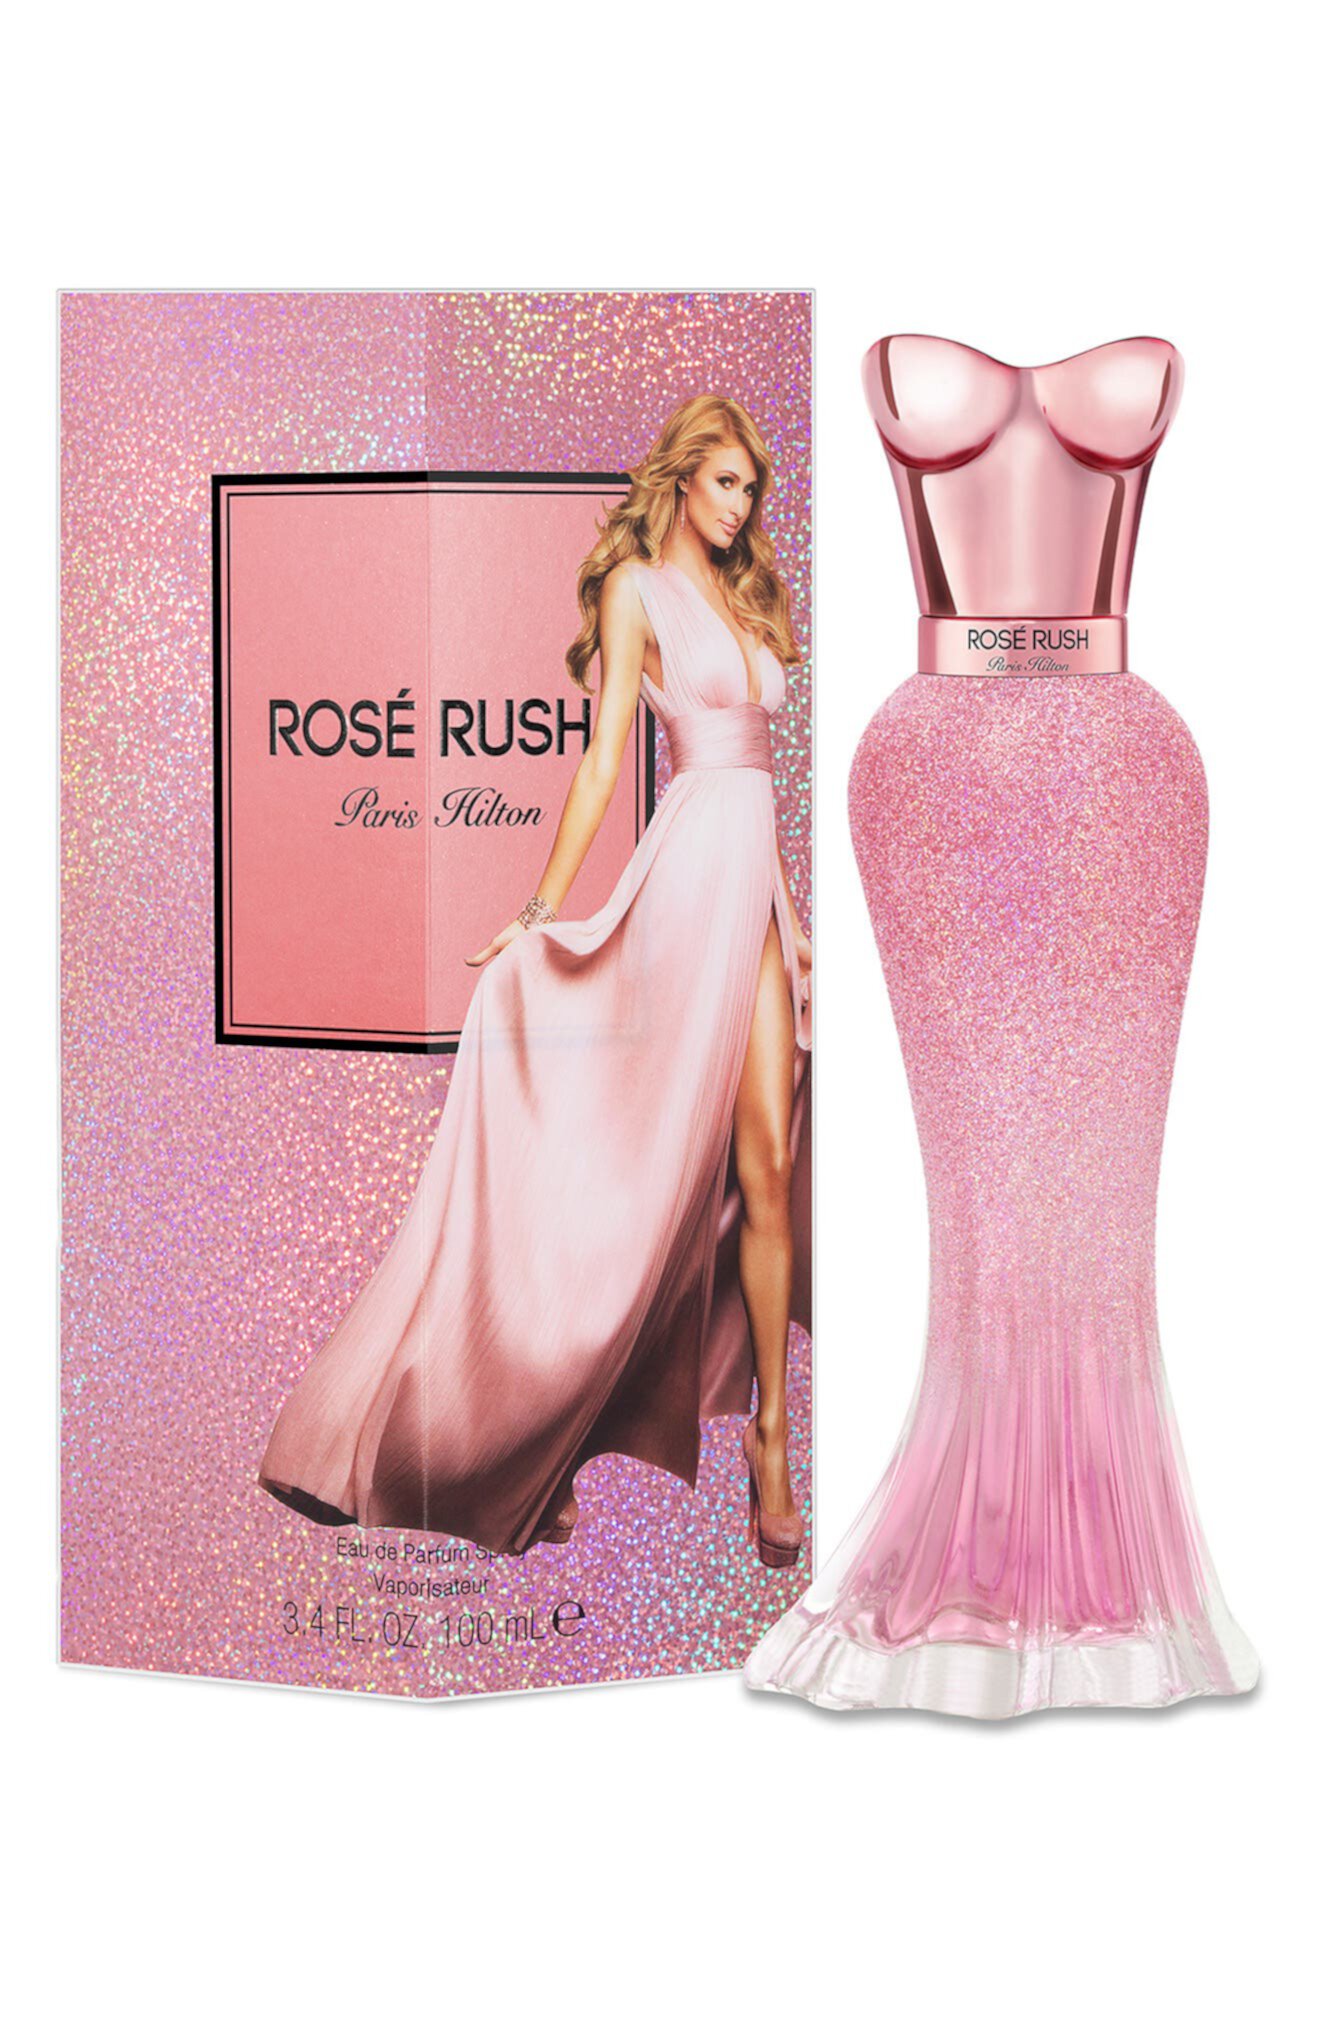 Rose Rush Eau De Parfum Paris Hilton